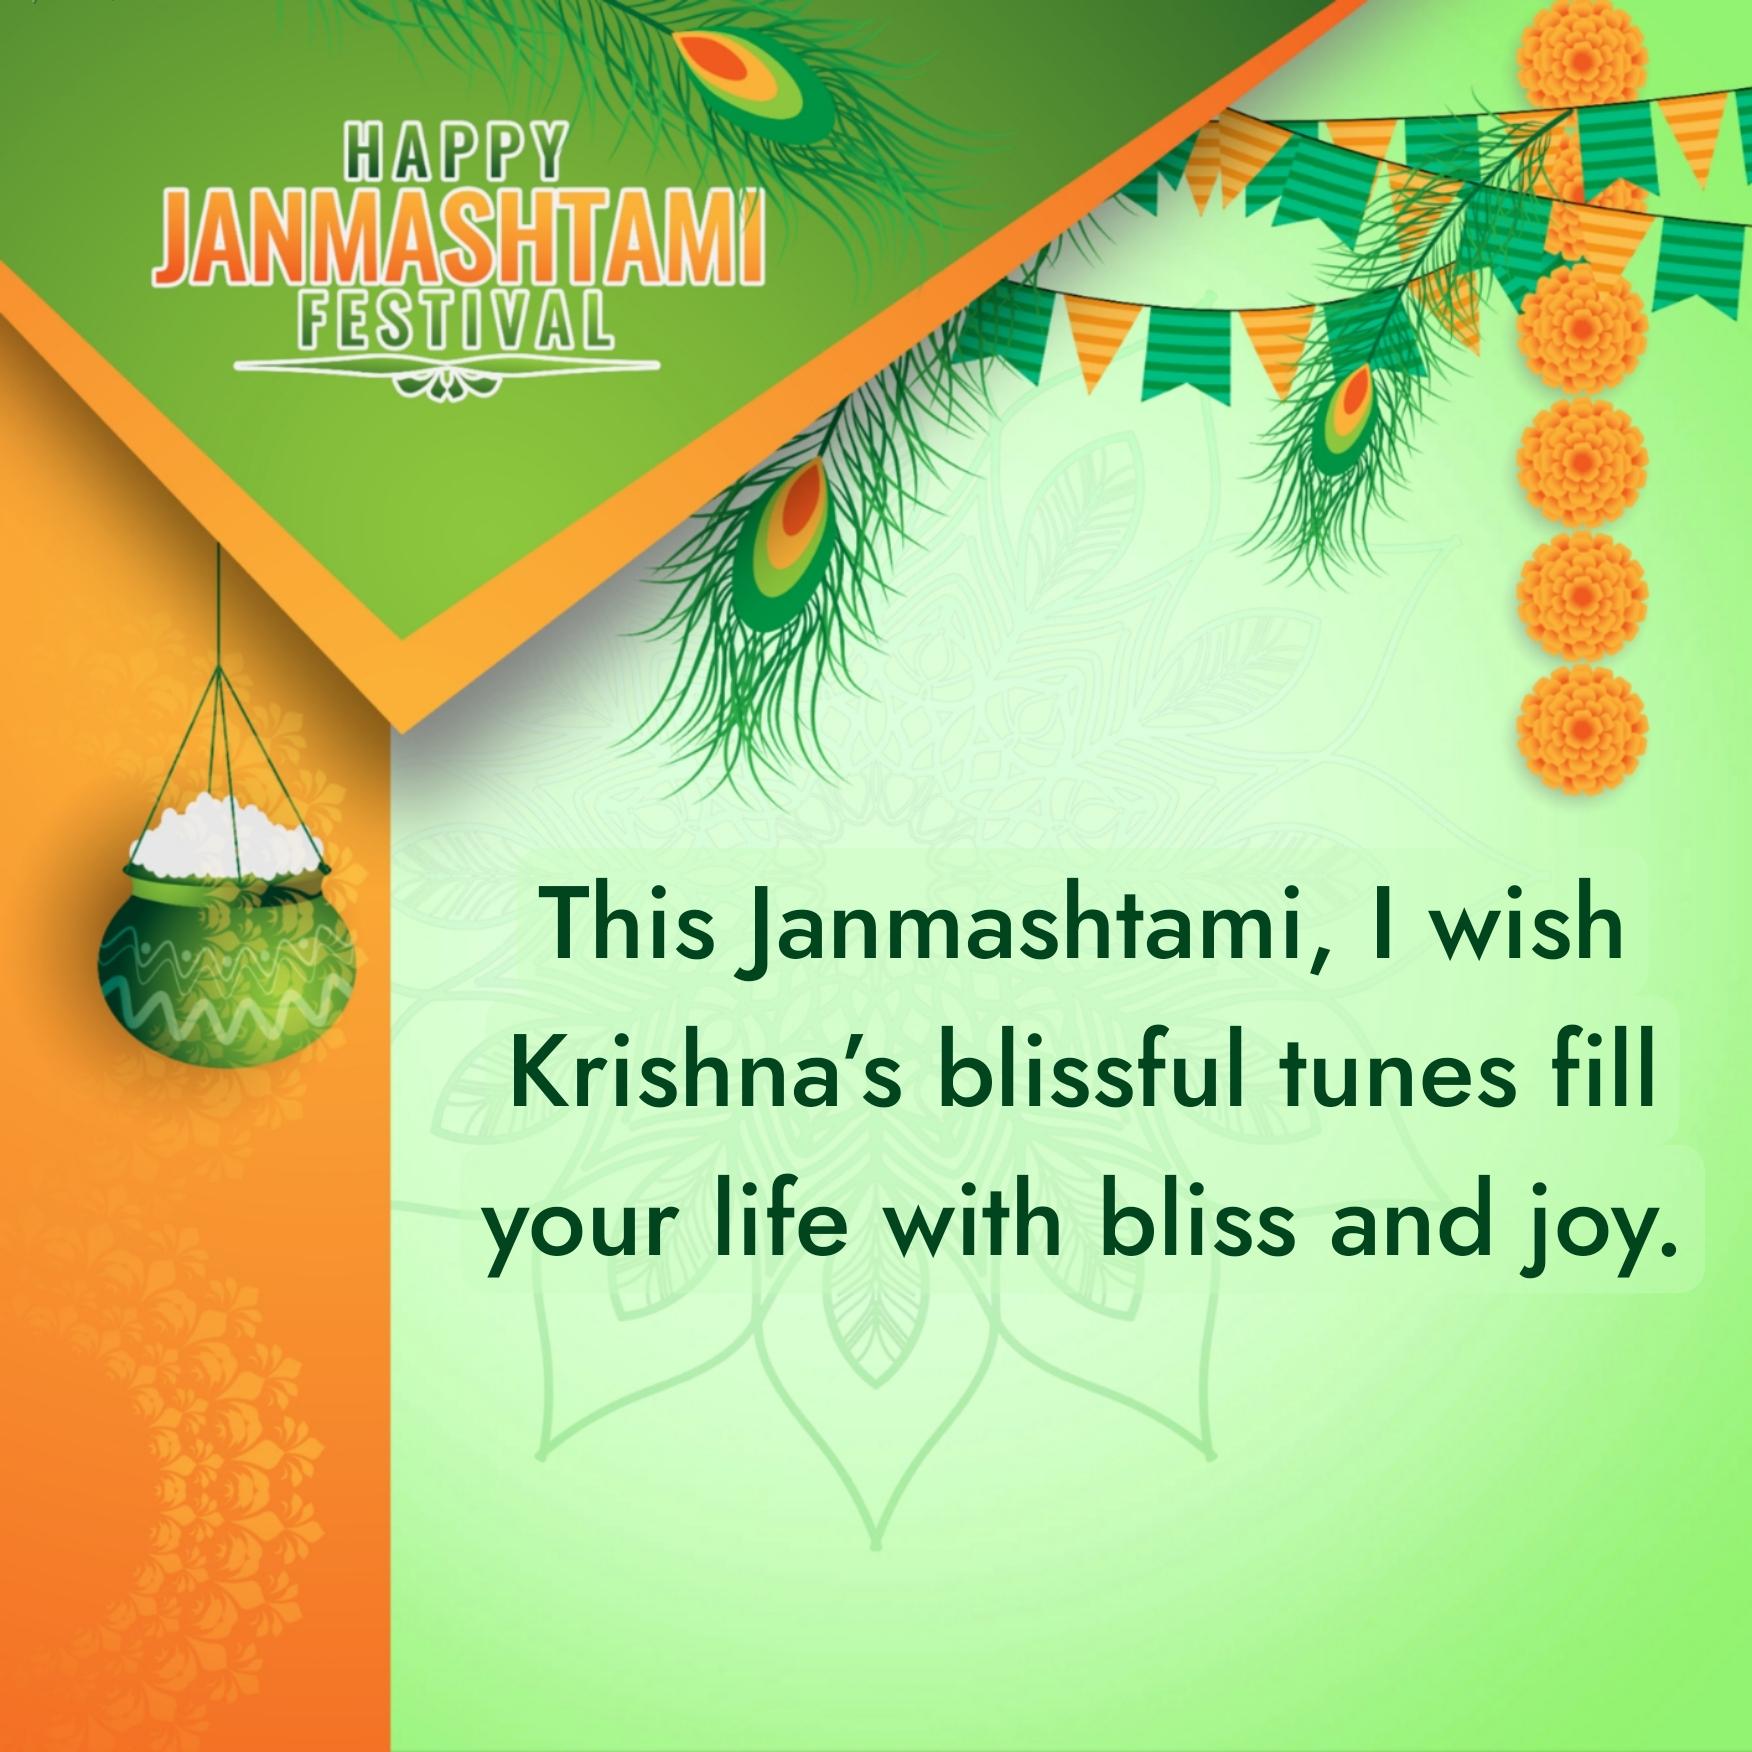 This Janmashtami I wish Krishnas blissful tunes fill your life